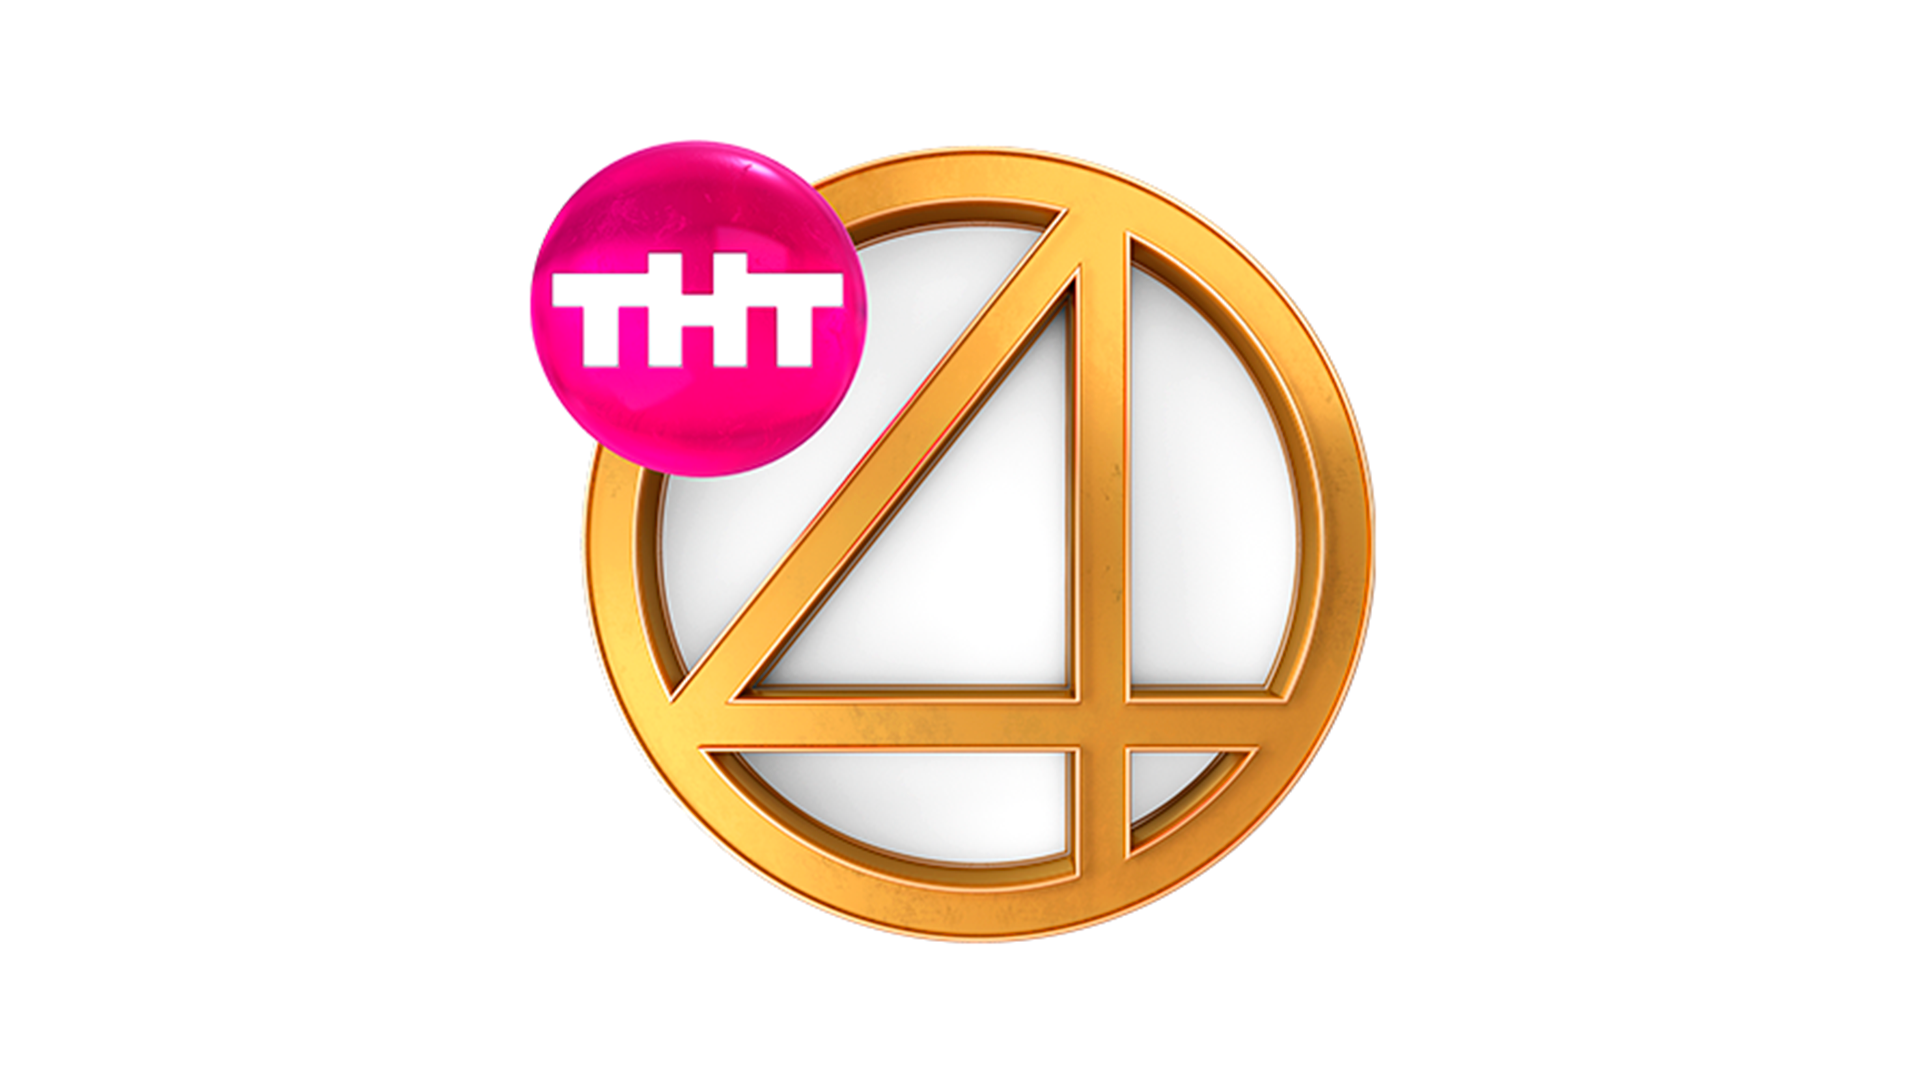 4 канал телевиденье. Телеканал ТНТ 4 новый логотип. Четвёртый канал эмблема телеканала ТНТ 4. Логотип тнт4 2017-н.в. ТНТ 4 прямой эфир.